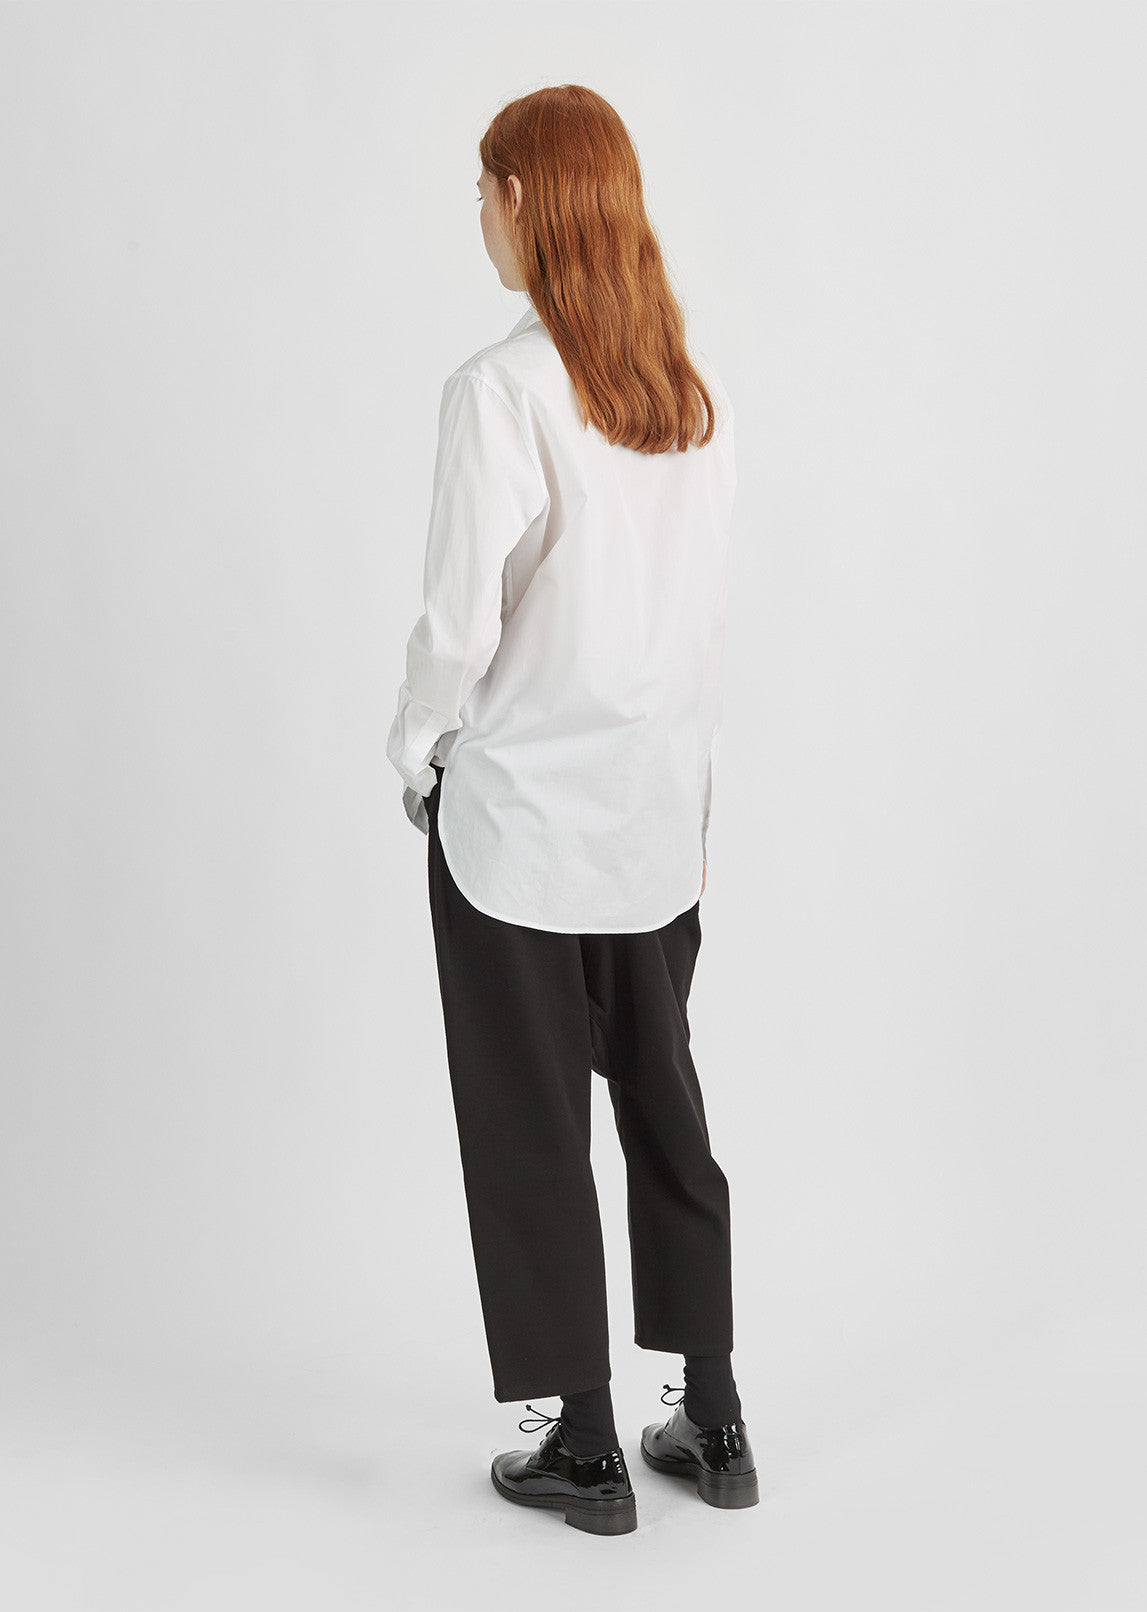 Cotton Pocket Shirt by Y's- La Garçonne